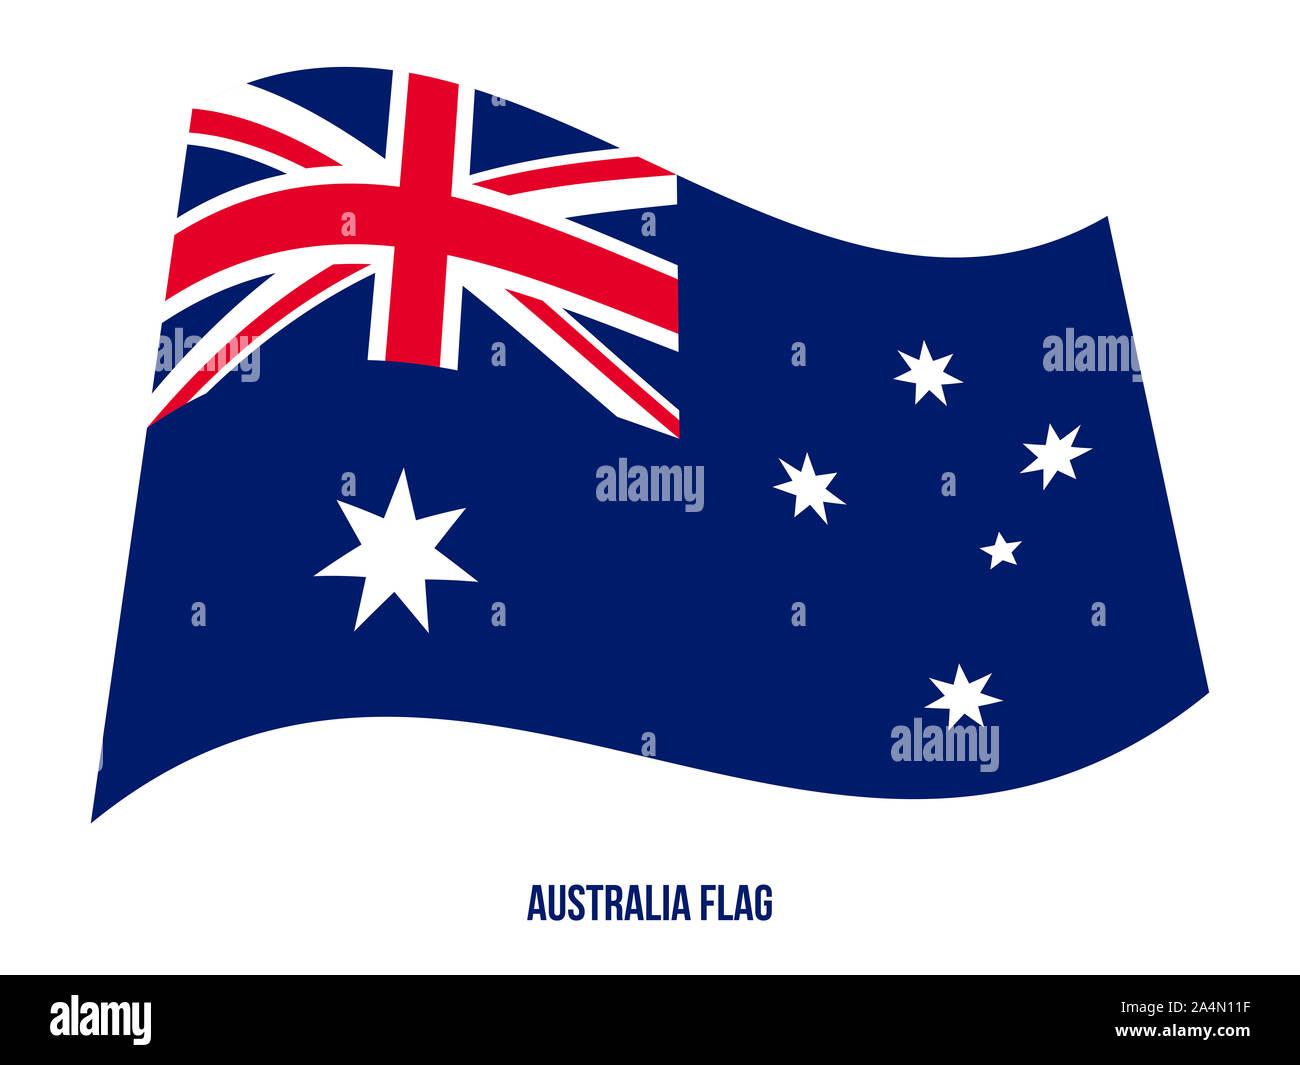 klinge kreativ Følsom Australia Flag Waving Vector Illustration on White Background. Australia  National Flag Stock Photo - Alamy